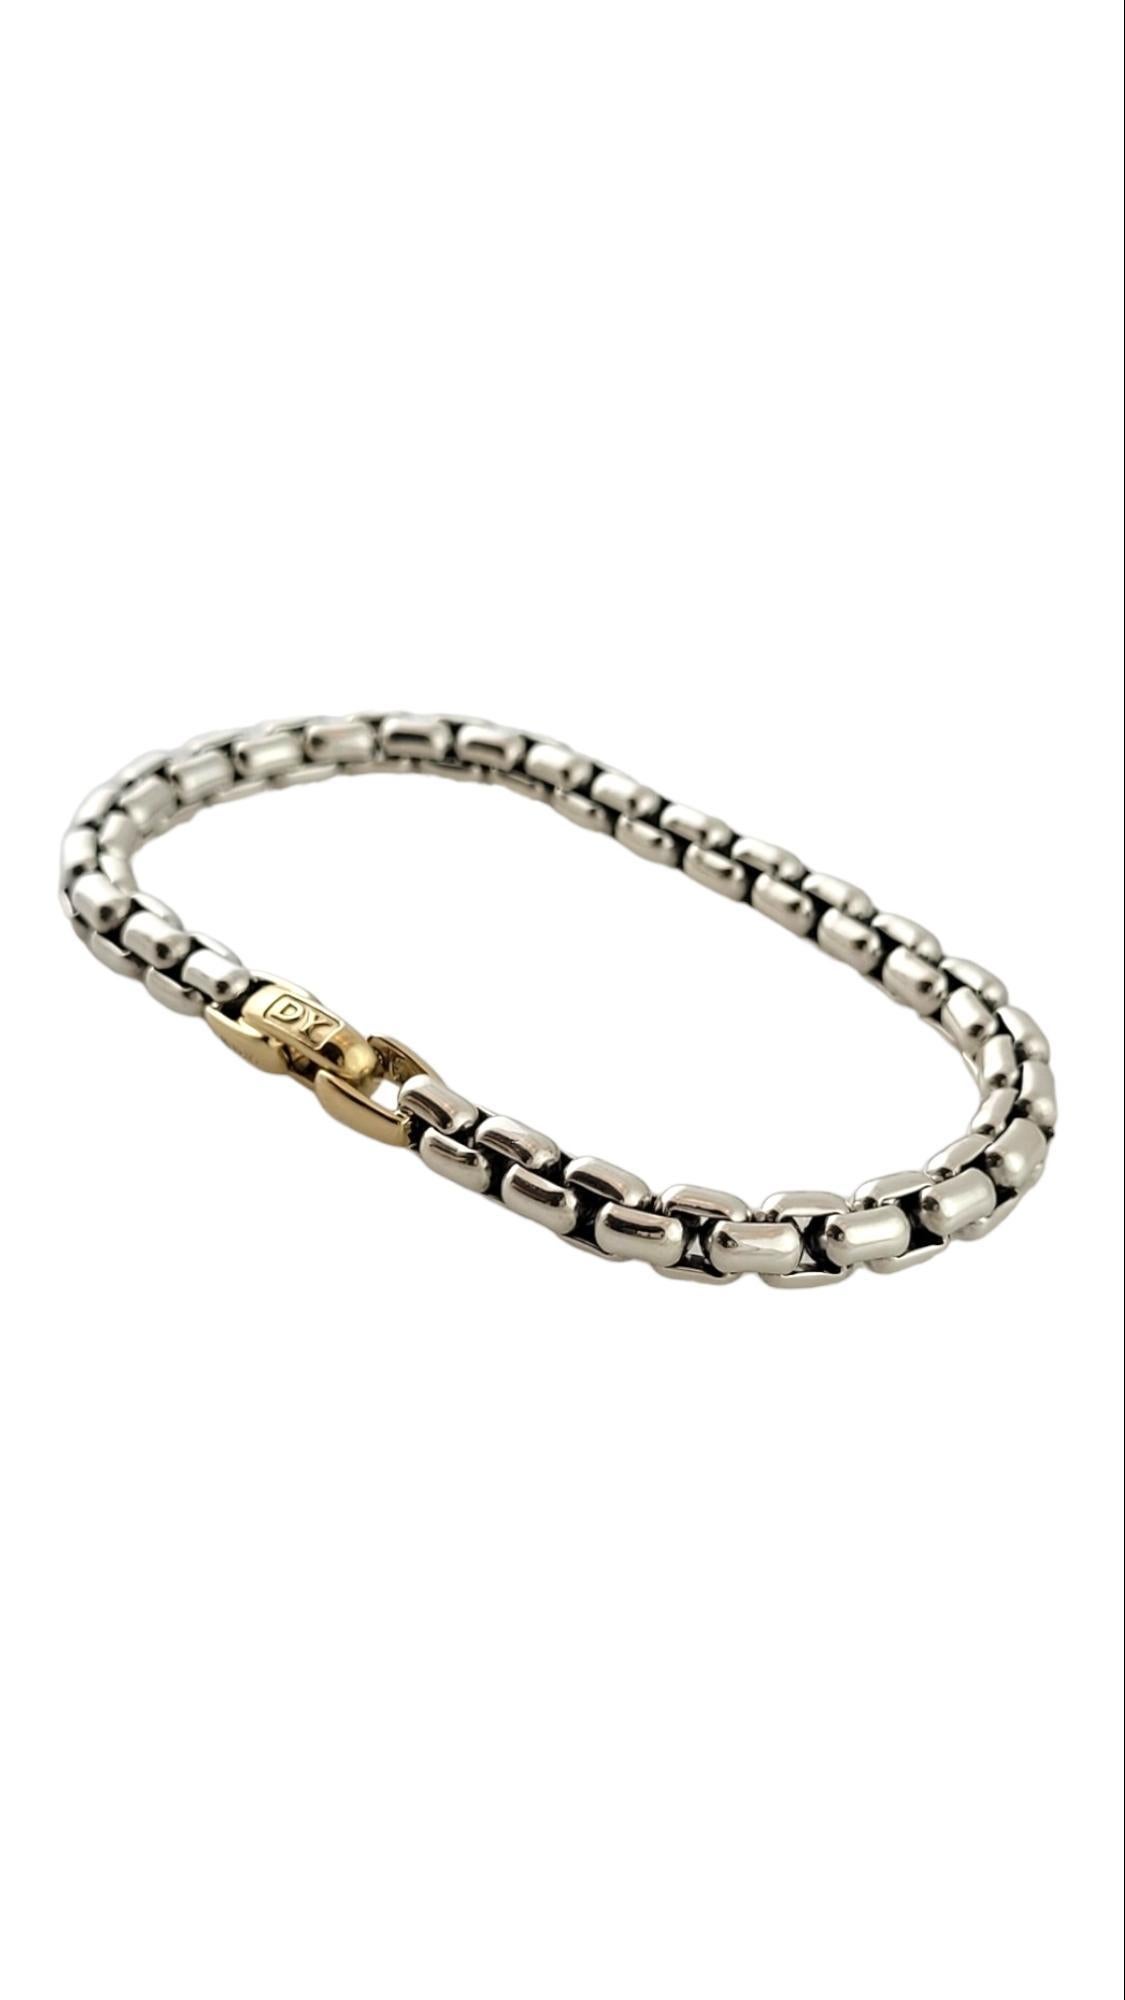 David Yurman 14K & Sterling Silver Box Chain Bracelet

Ce magnifique bracelet en chaîne du designer David Yurman est fabriqué à la fois en argent sterling 925 et en or jaune 14 carats !

Taille : 7